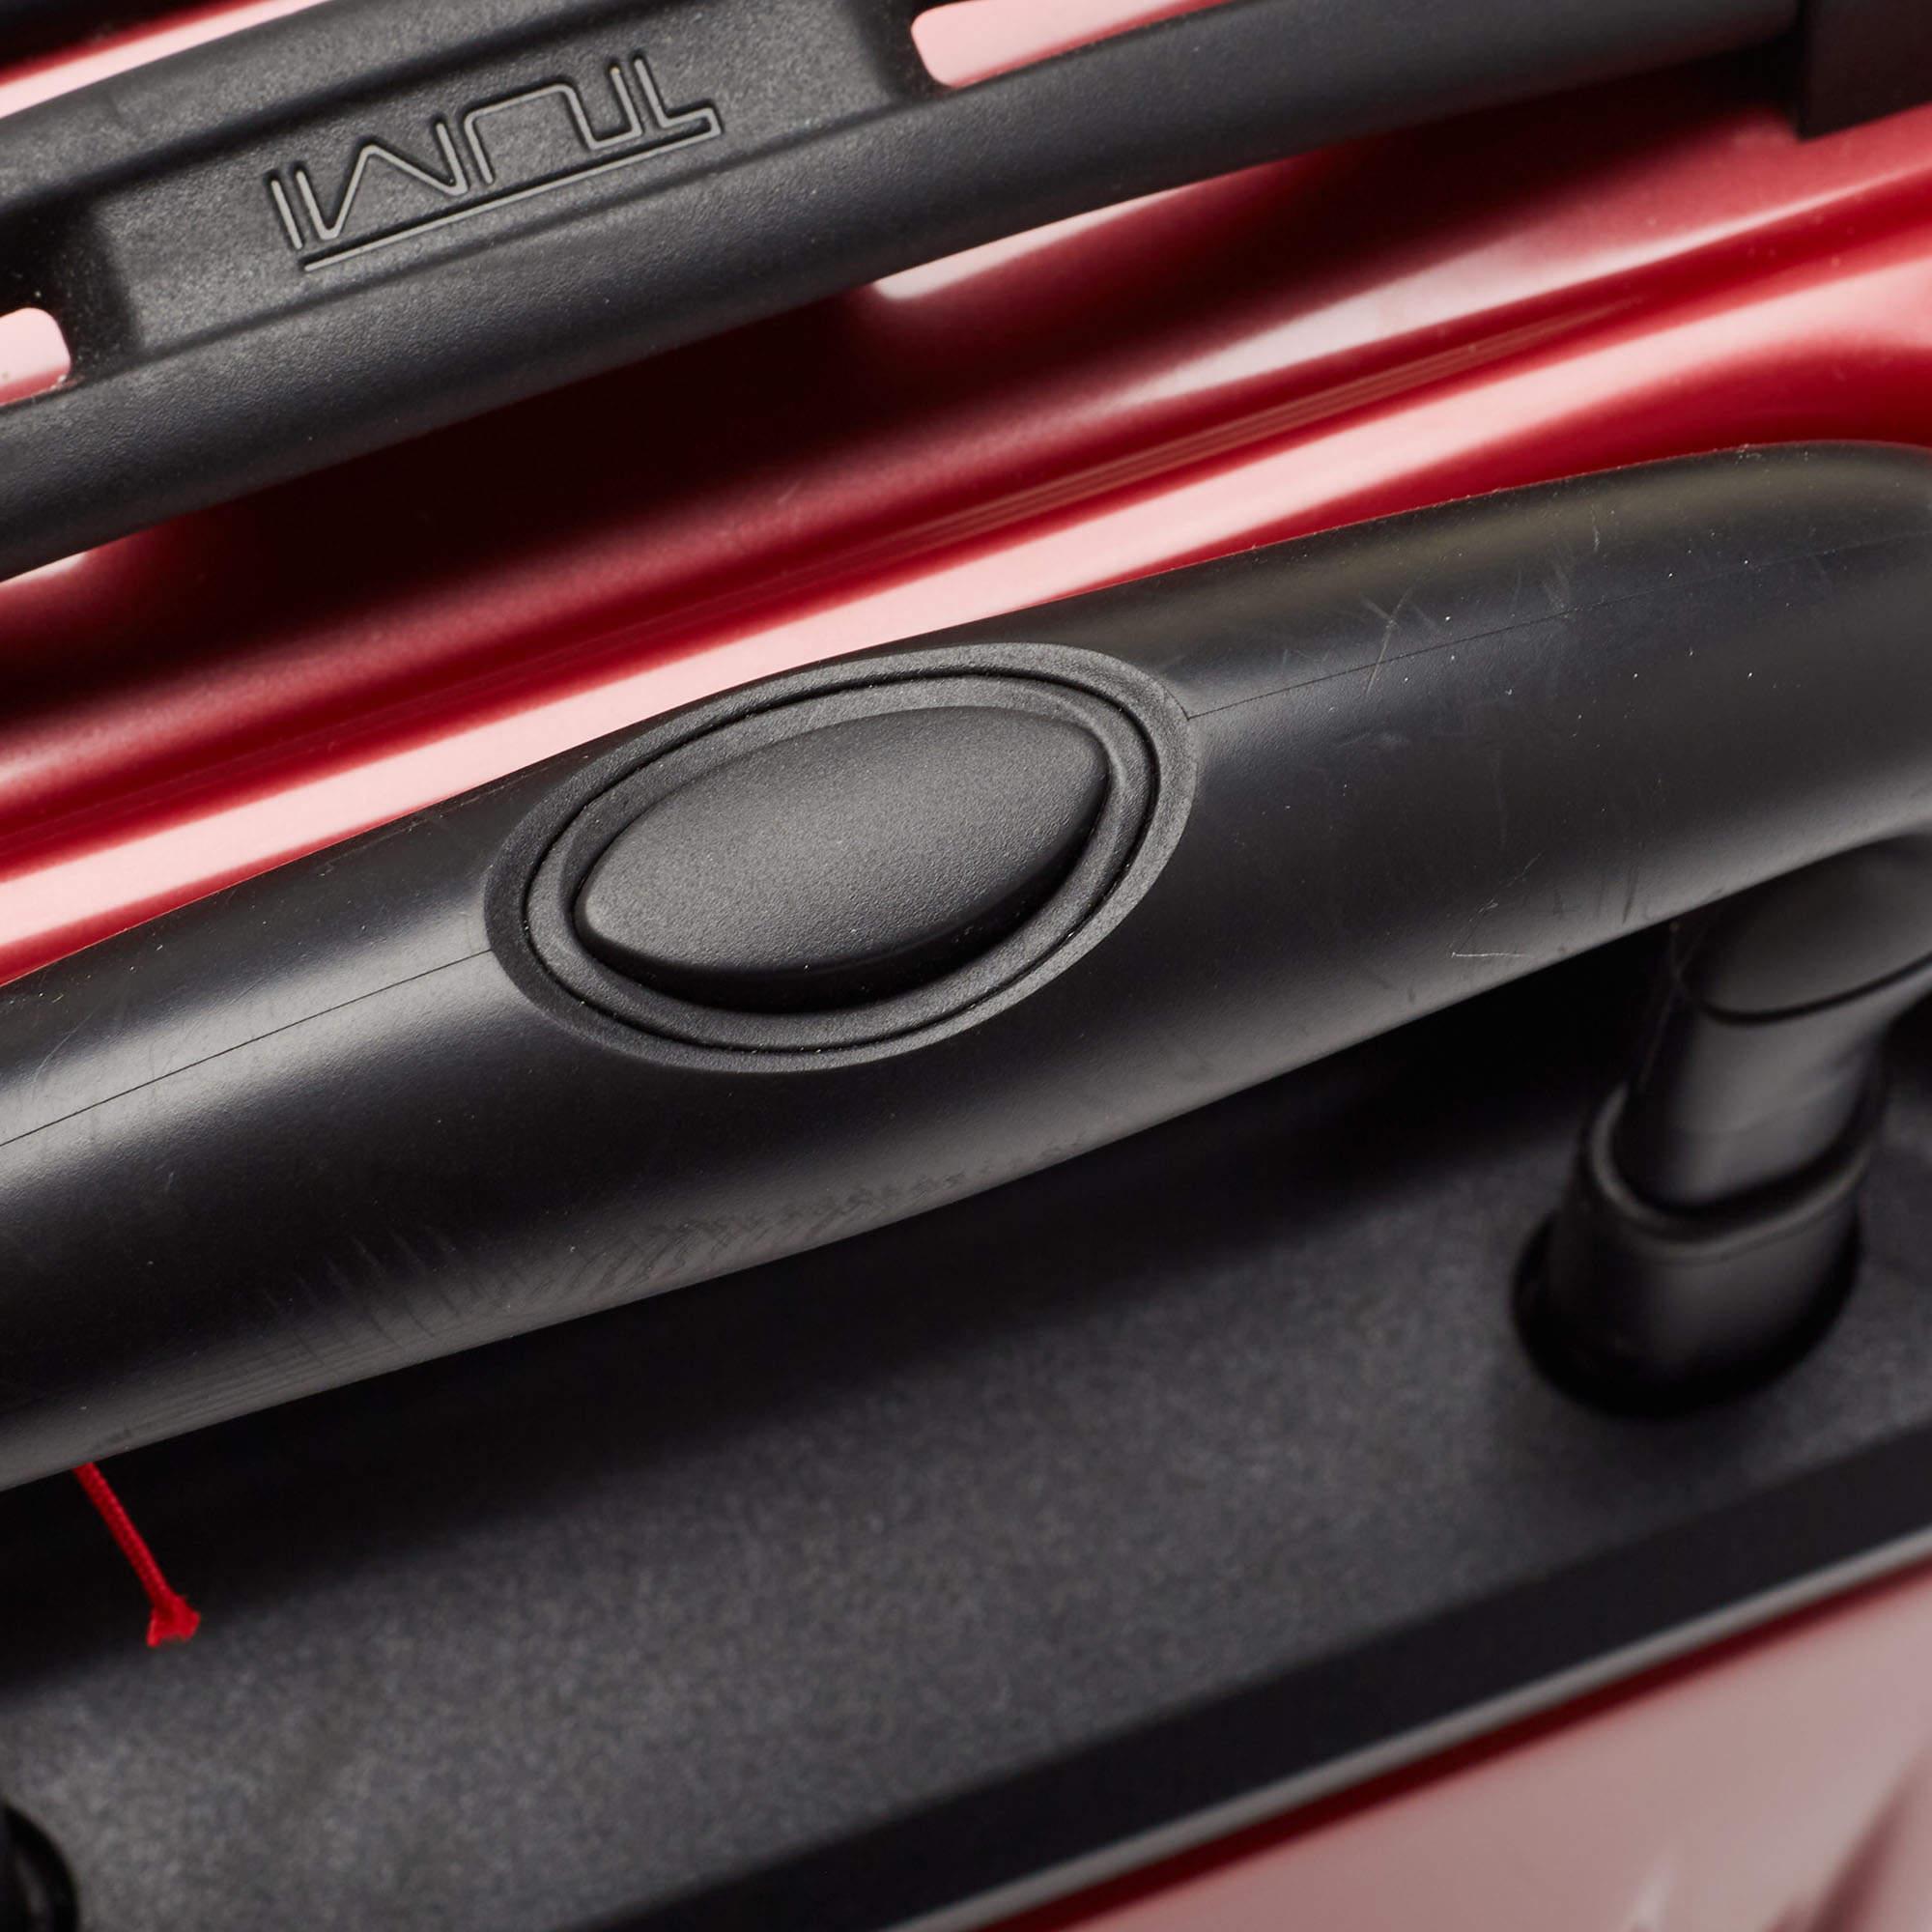 TUMI Red 4 Wheeled V4 International Expandable Carry On Luggage 5